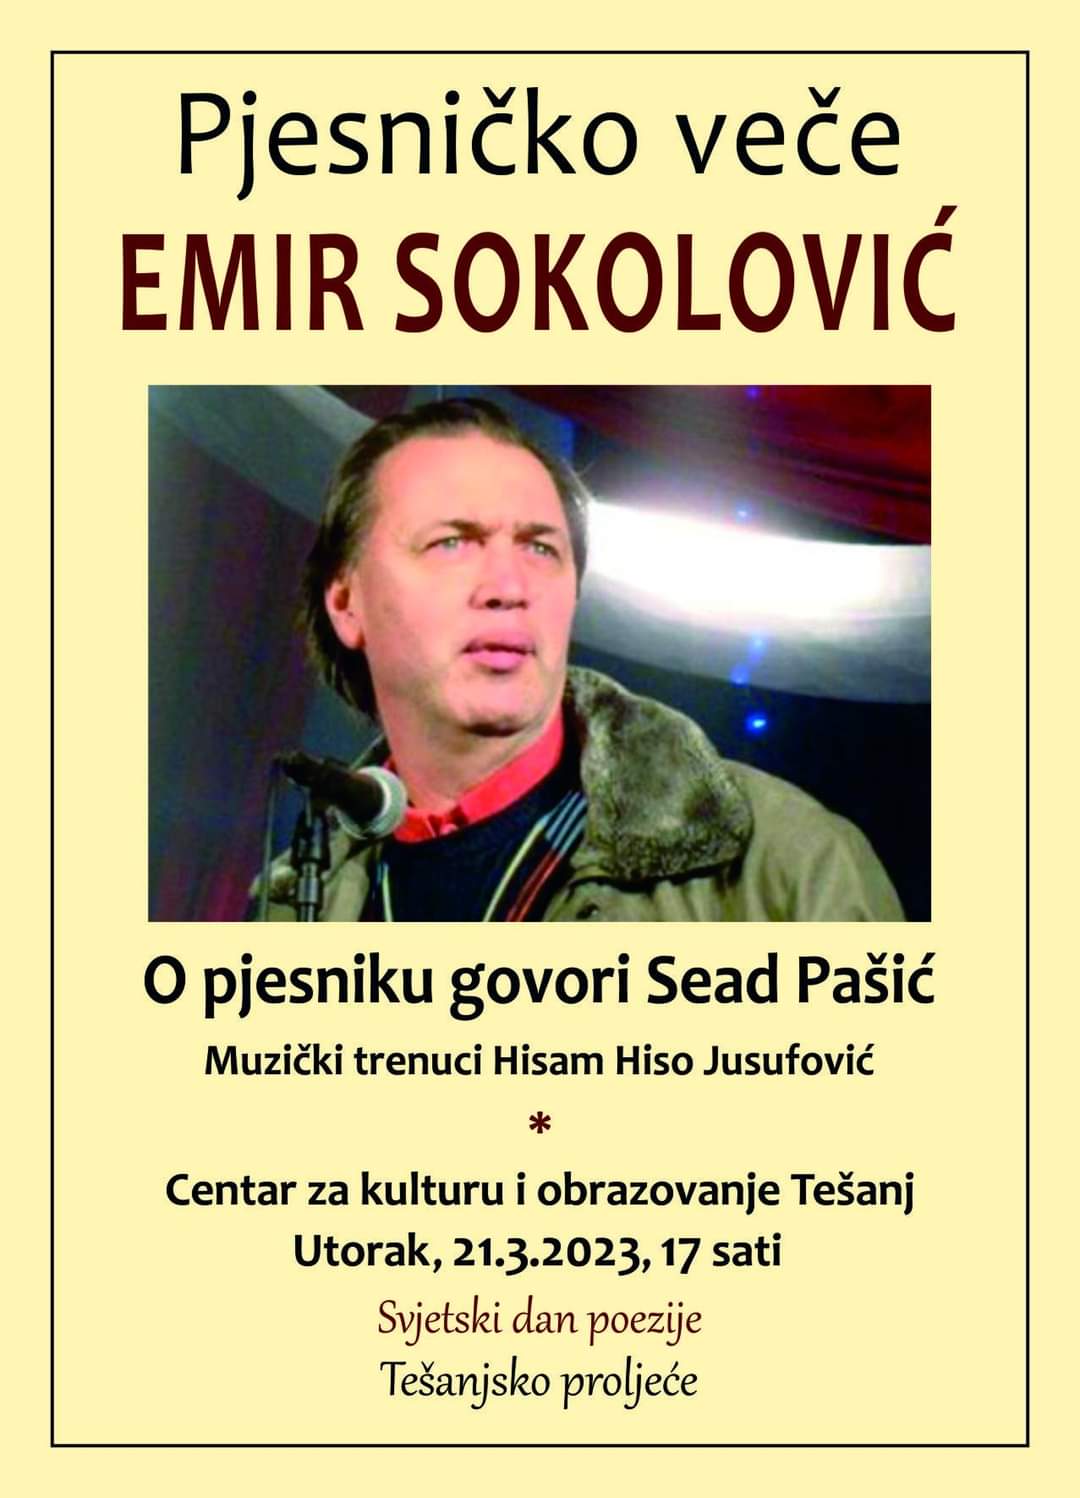 Pjesničko veče Emira Sokolovića povodom Svjetskog dana poezije